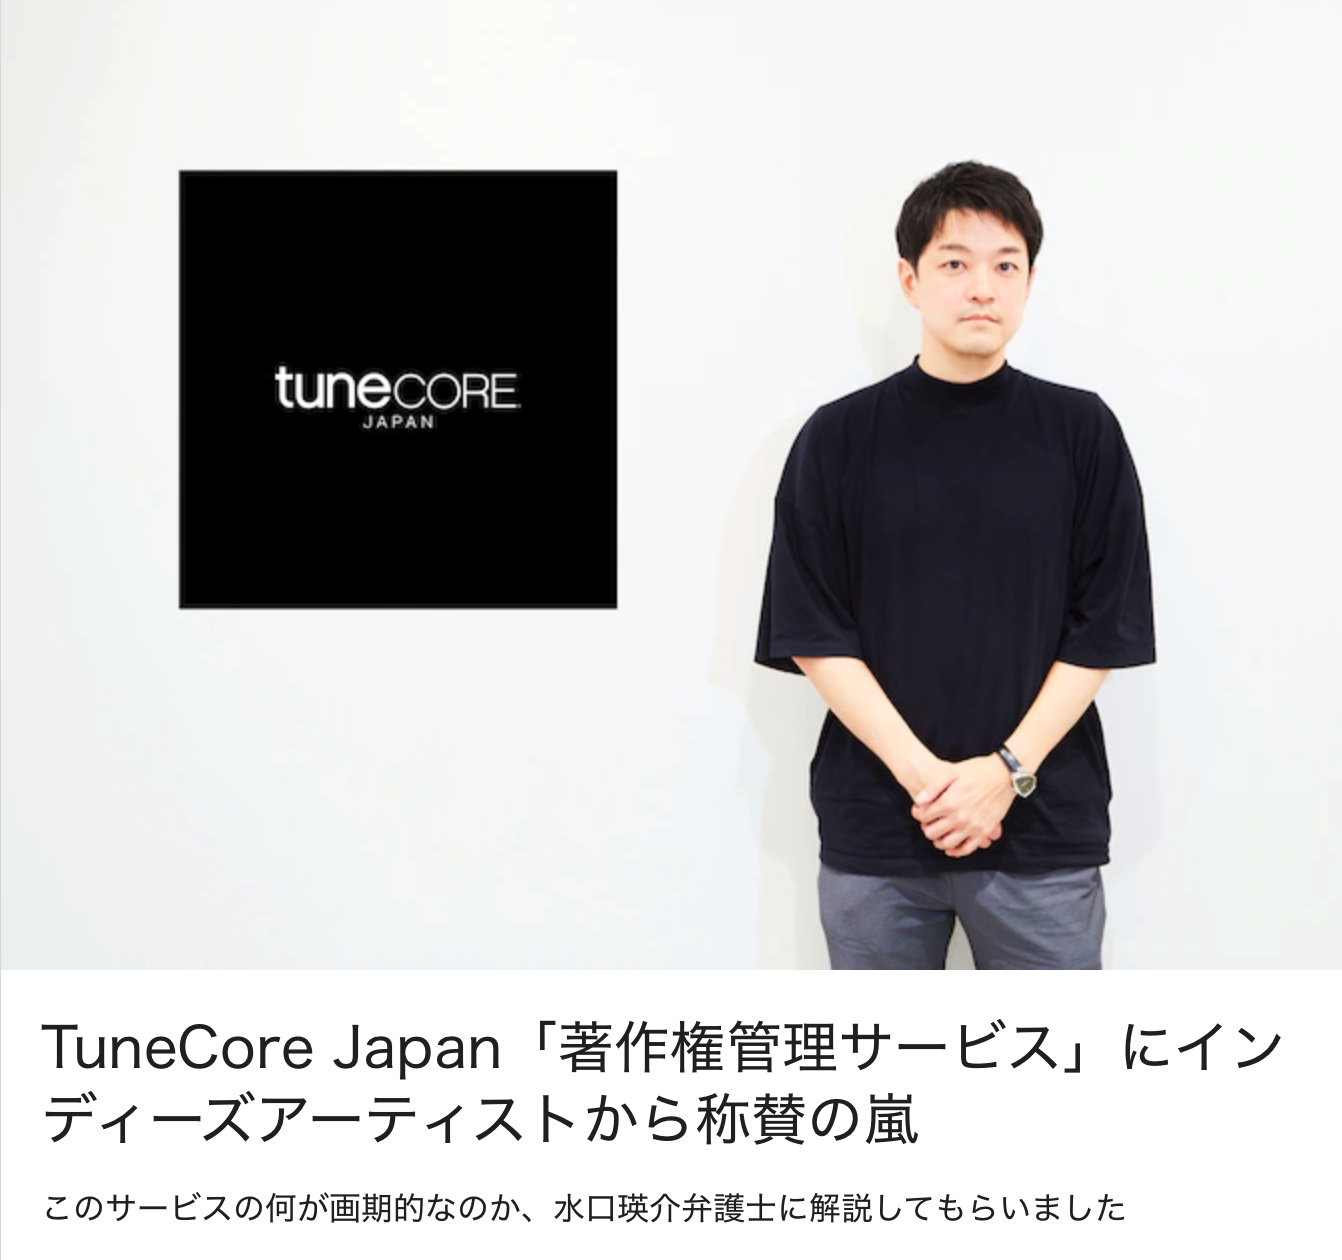 インタビュー記事「TuneCore Japan「著作権管理サービス」にインディーズアーティストから称賛の嵐」が音楽ナタリーに掲載されました。